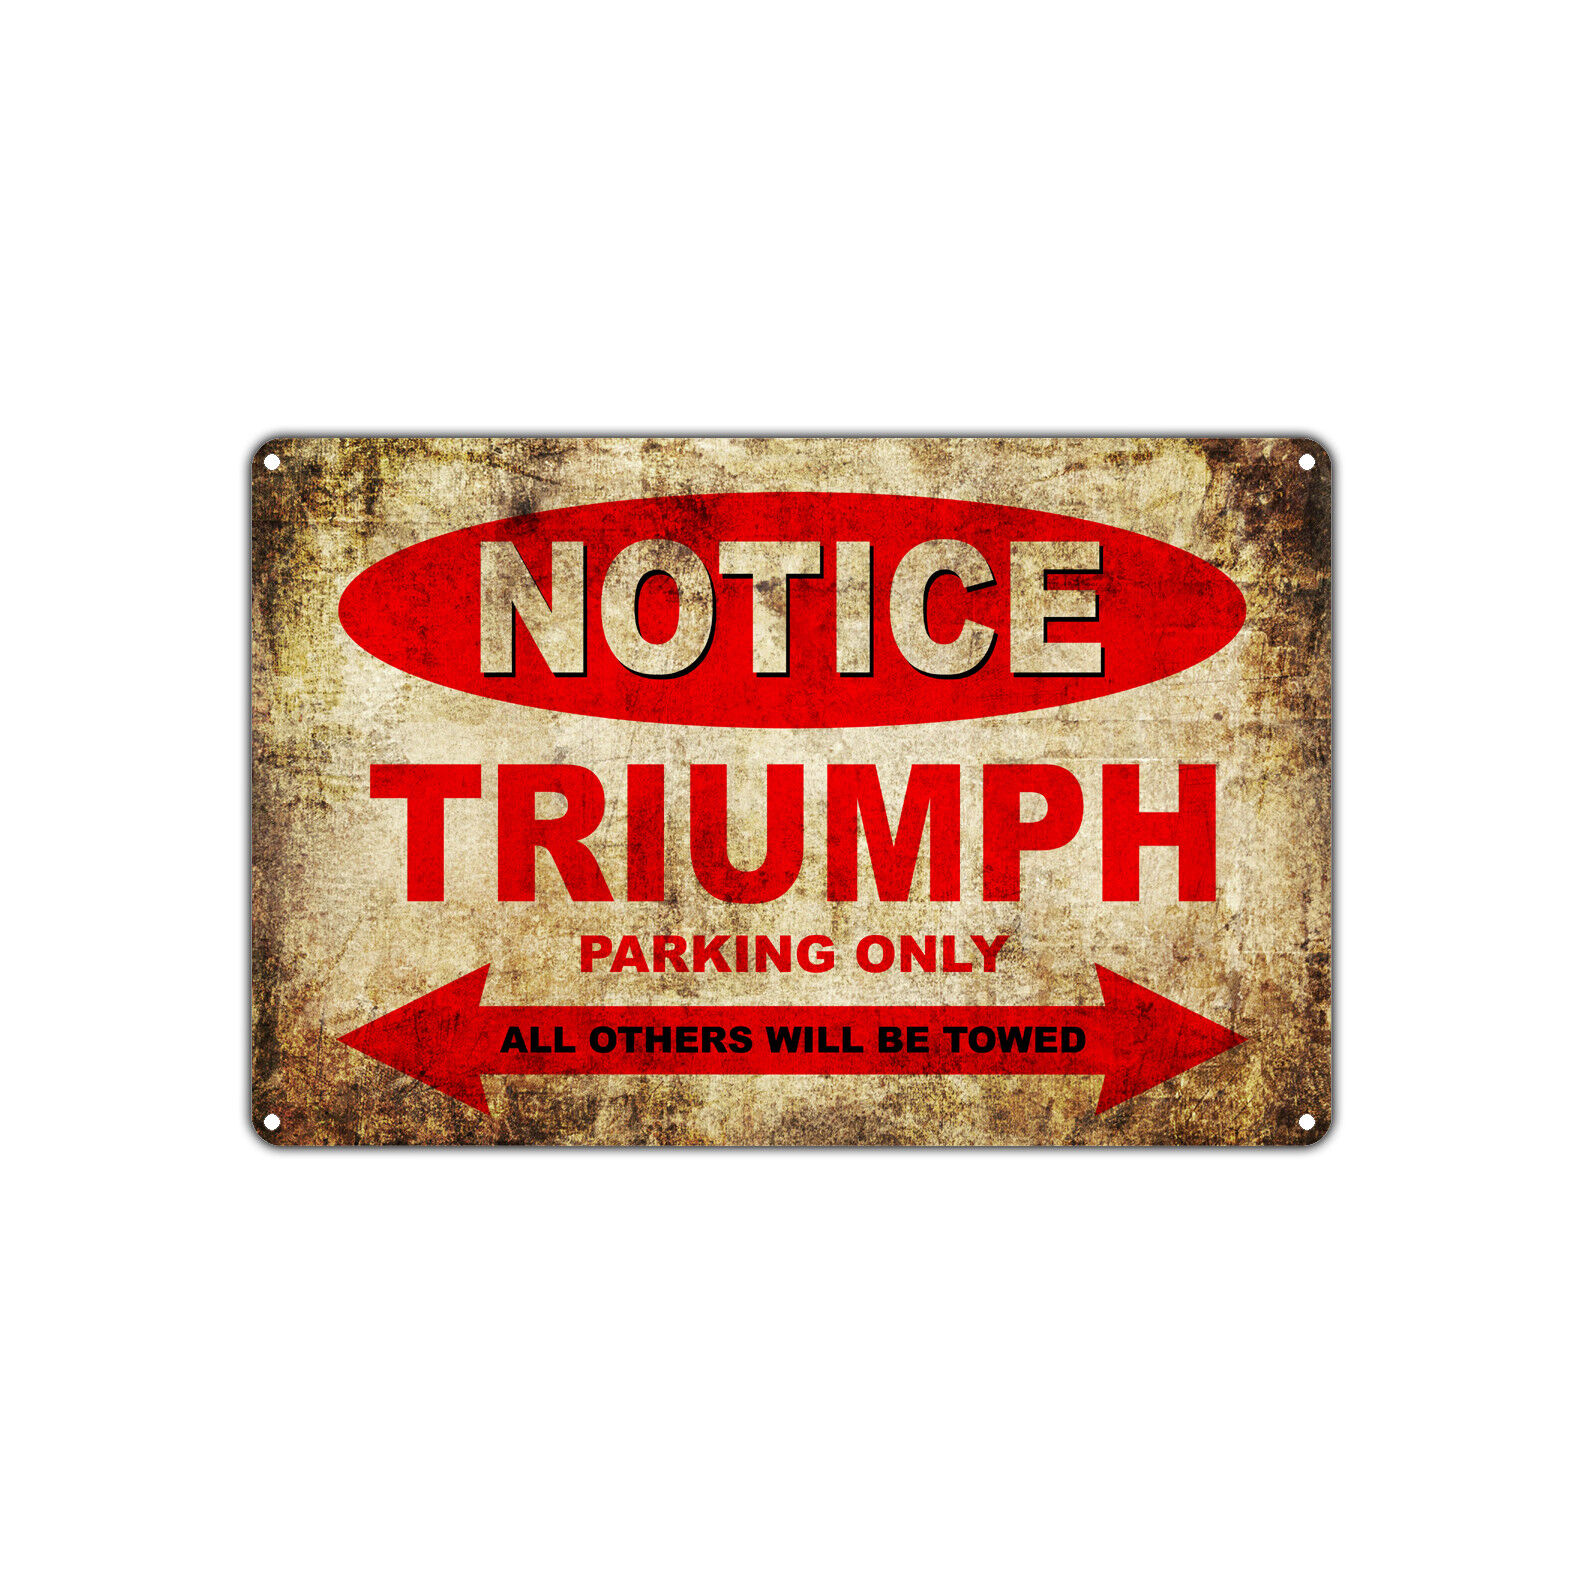 TRIUMPH Motorcycles Parking Sign Vintage Retro Metal Decor Art Shop Man Cave Bar